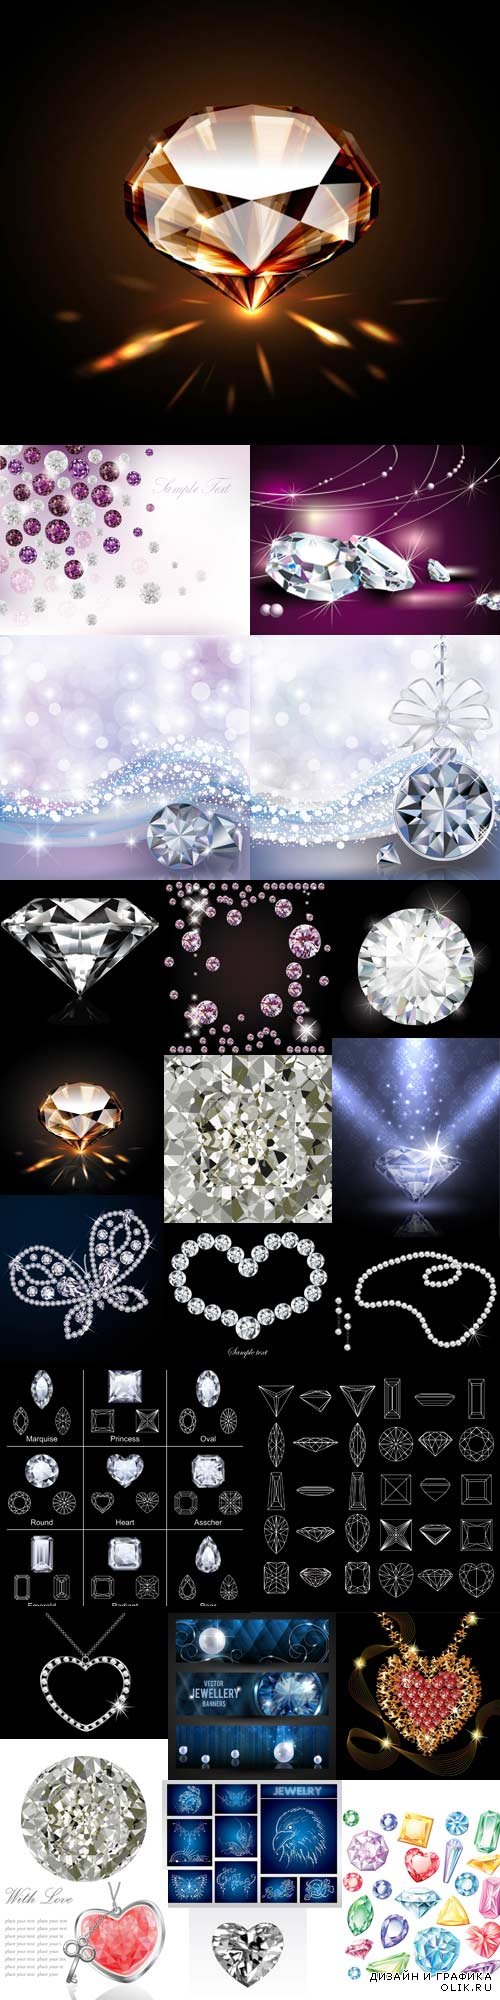 Stunning Illustrations diamonds